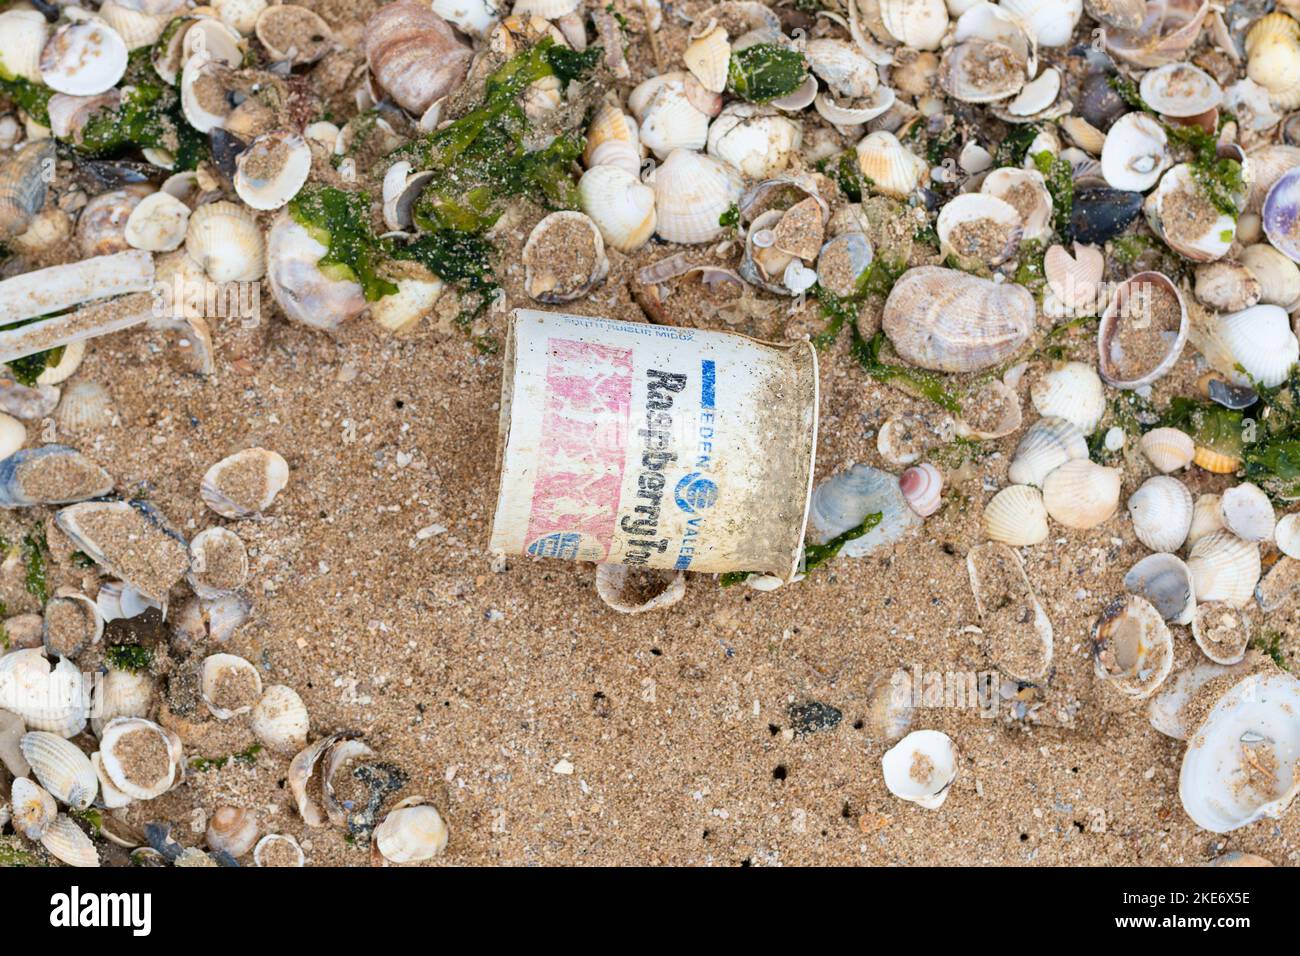 Meeresschutt - alter Einweg-Kunststoff-Joghurttopf, der am Strand gewaschen wurde - Kent, England, Großbritannien Stockfoto